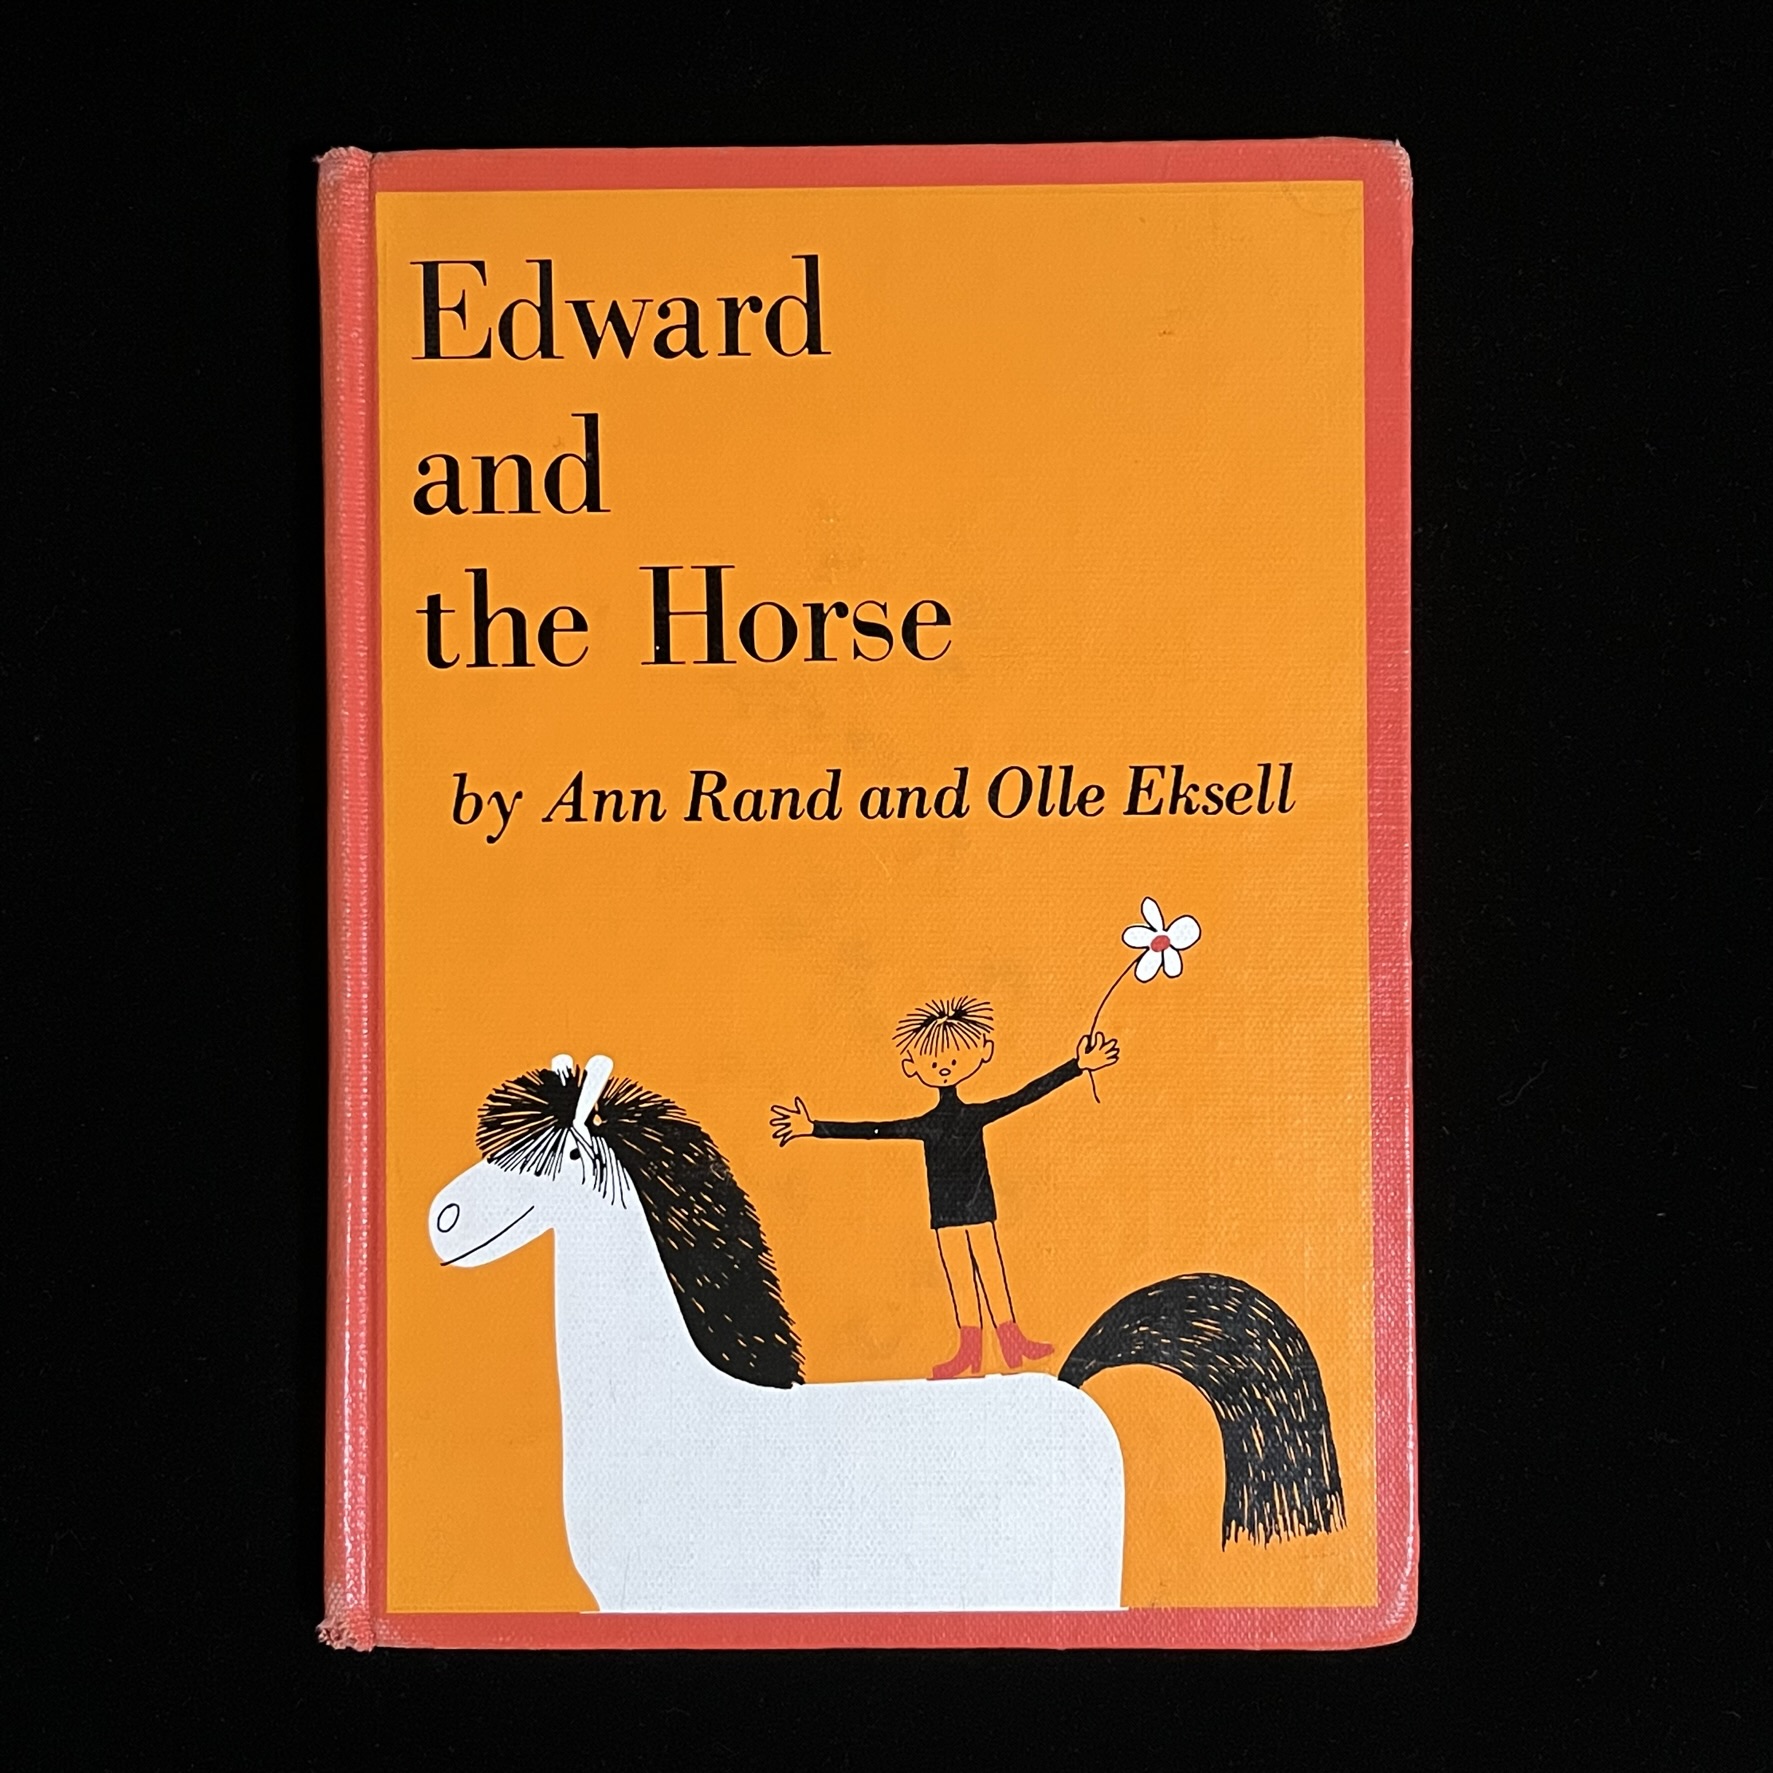 『Edward and the horse』の絵本の表紙の写真です。白い馬の上に白いお花を持ったエドワードくんが立ち乗りしているイラストがのっています。